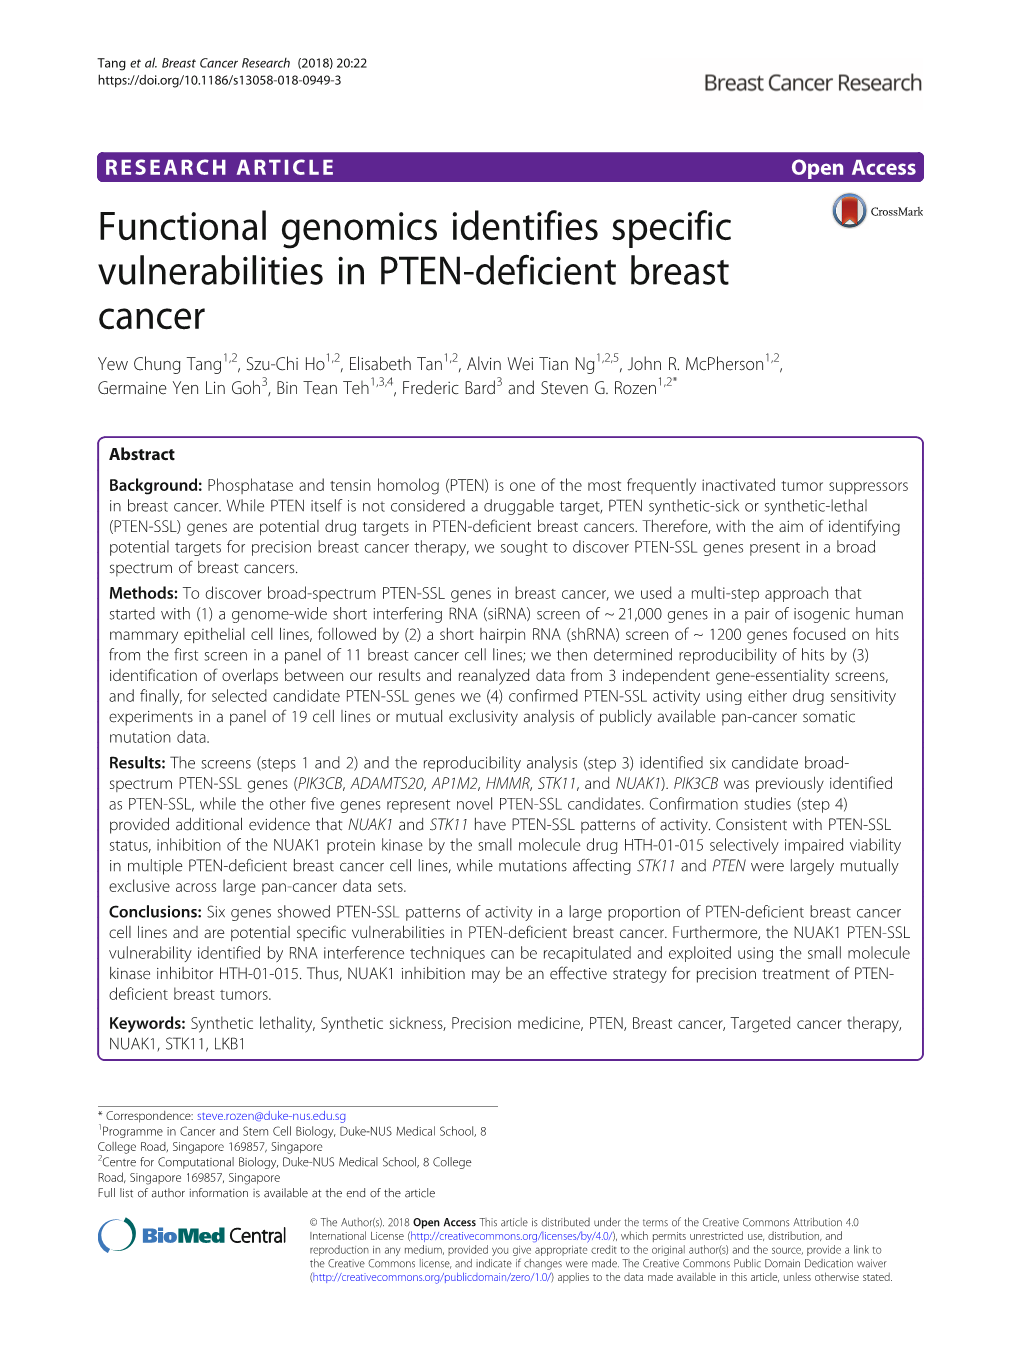 Functional Genomics Identifies Specific Vulnerabilities in PTEN-Deficient